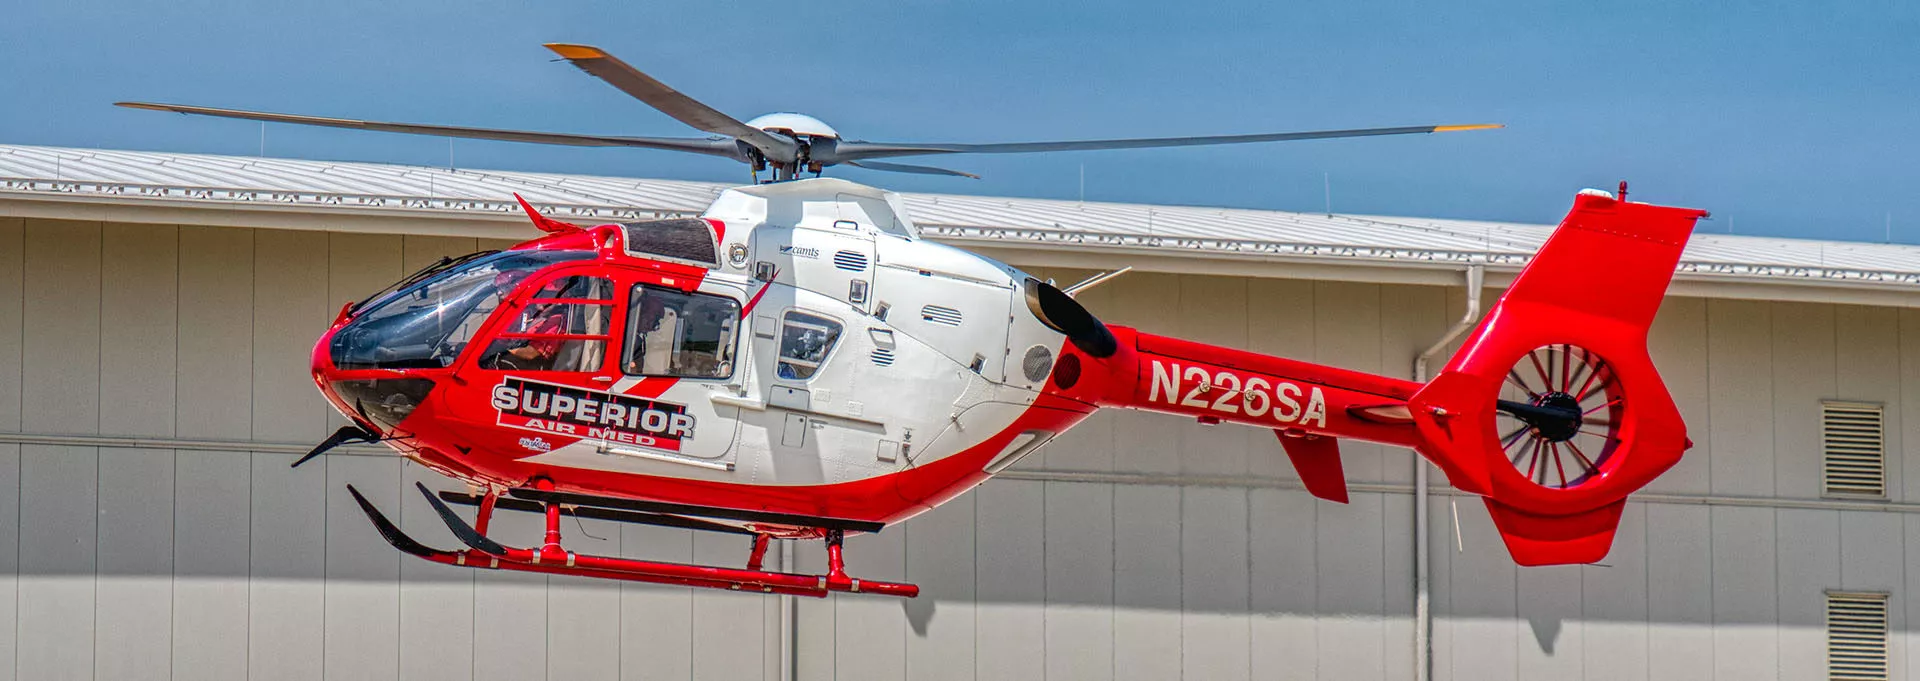 Superior Ambulance Helicopter